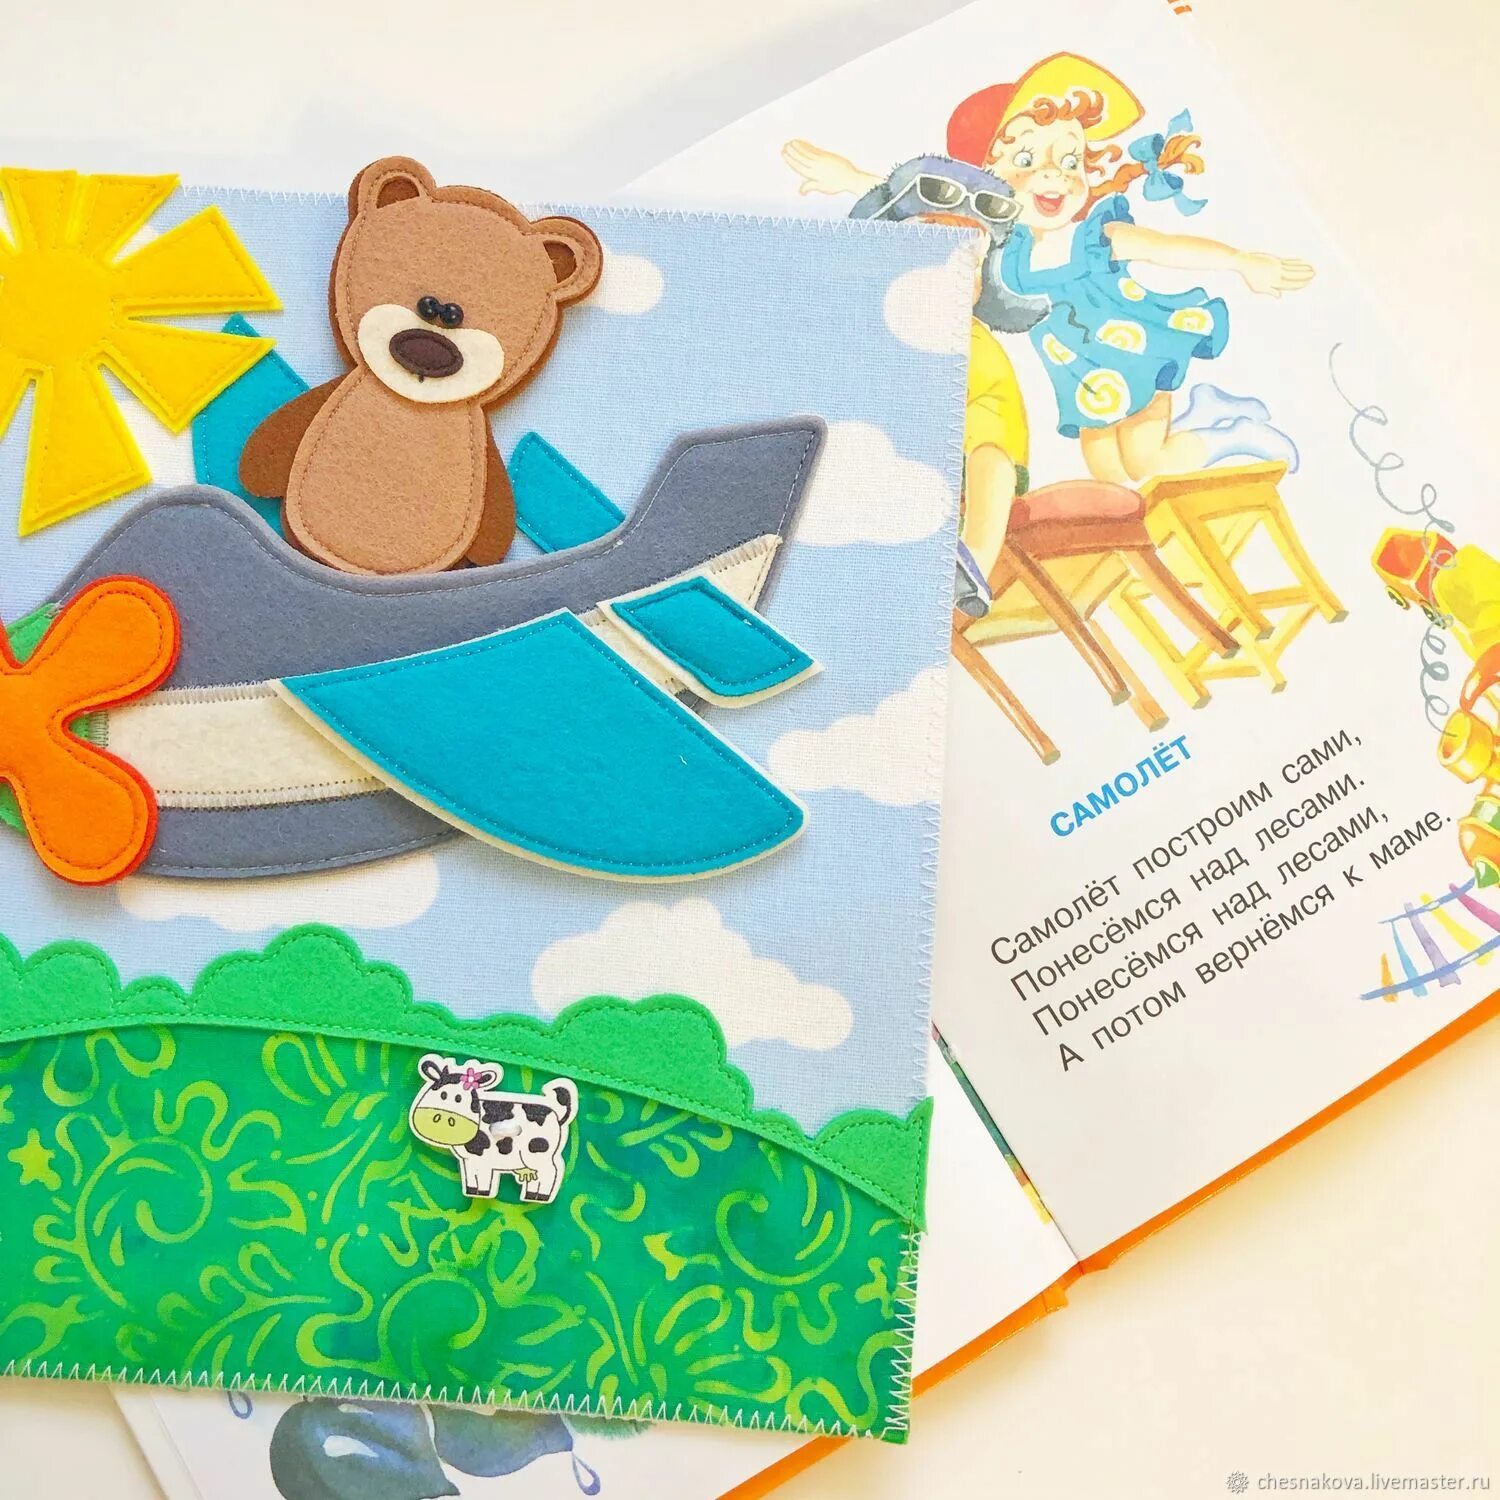 Детство начинается слова. Обложка фетровой книги с медведем.